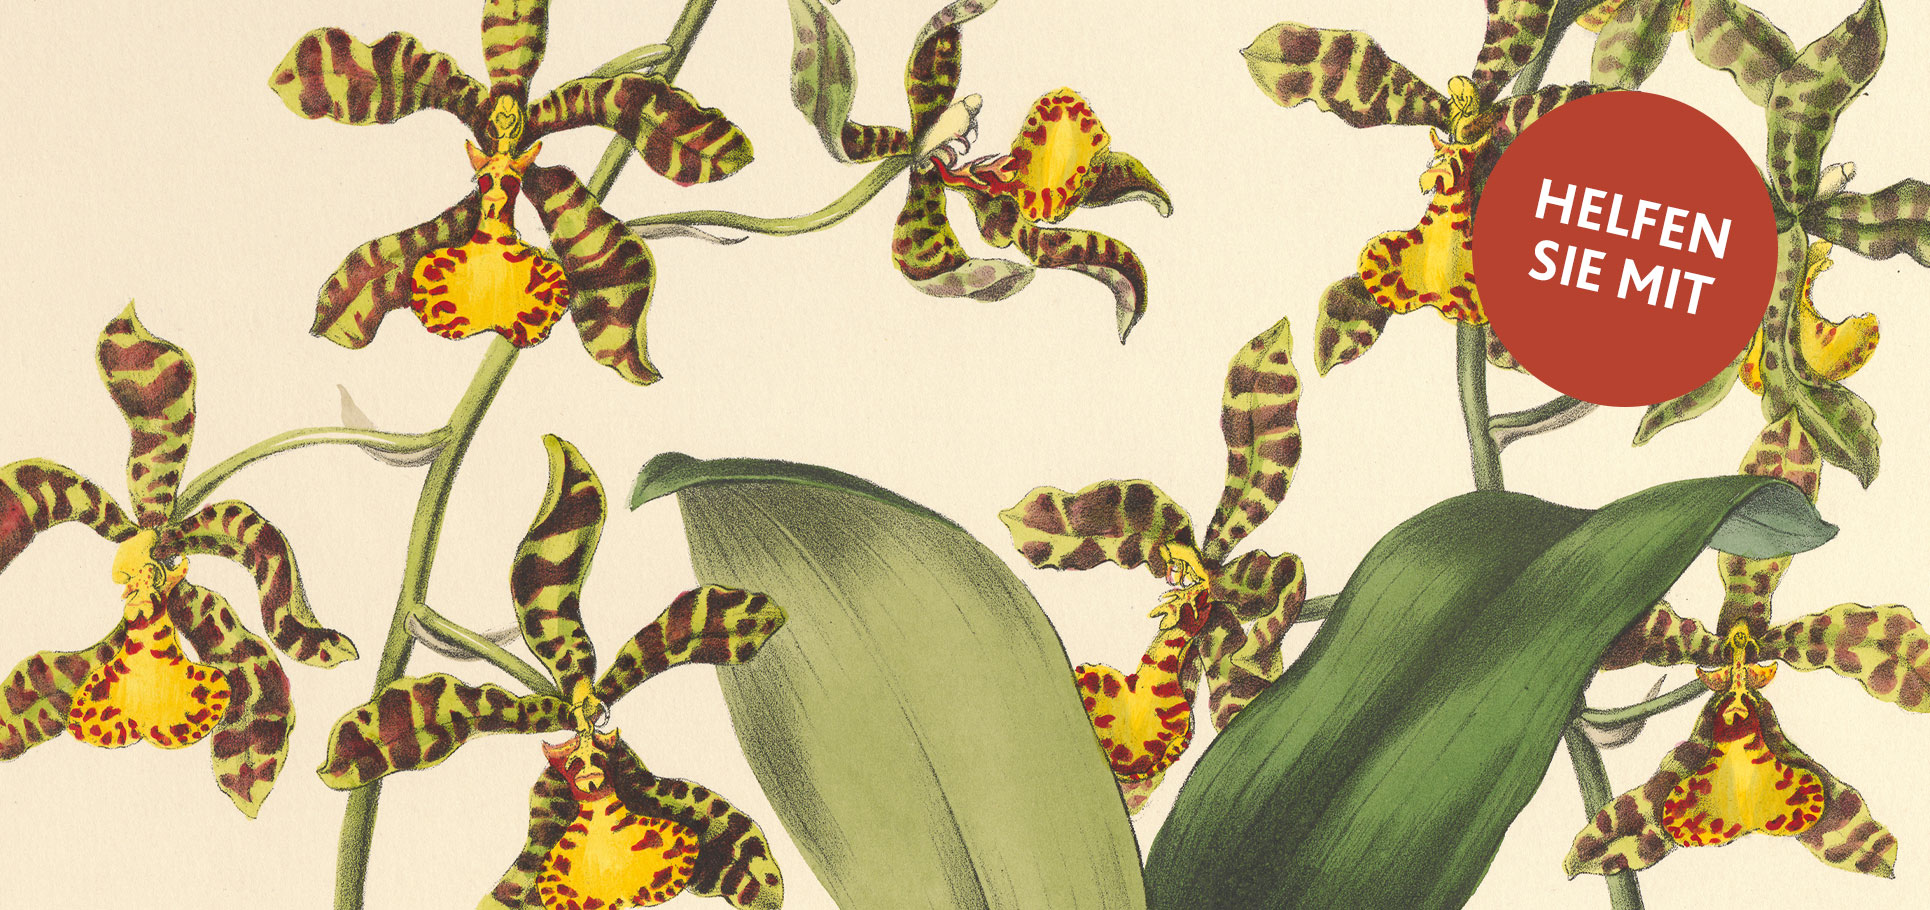 Alte Darstellung einer gelben Tigerorchidee, roter Button "Helfen Sie mit"